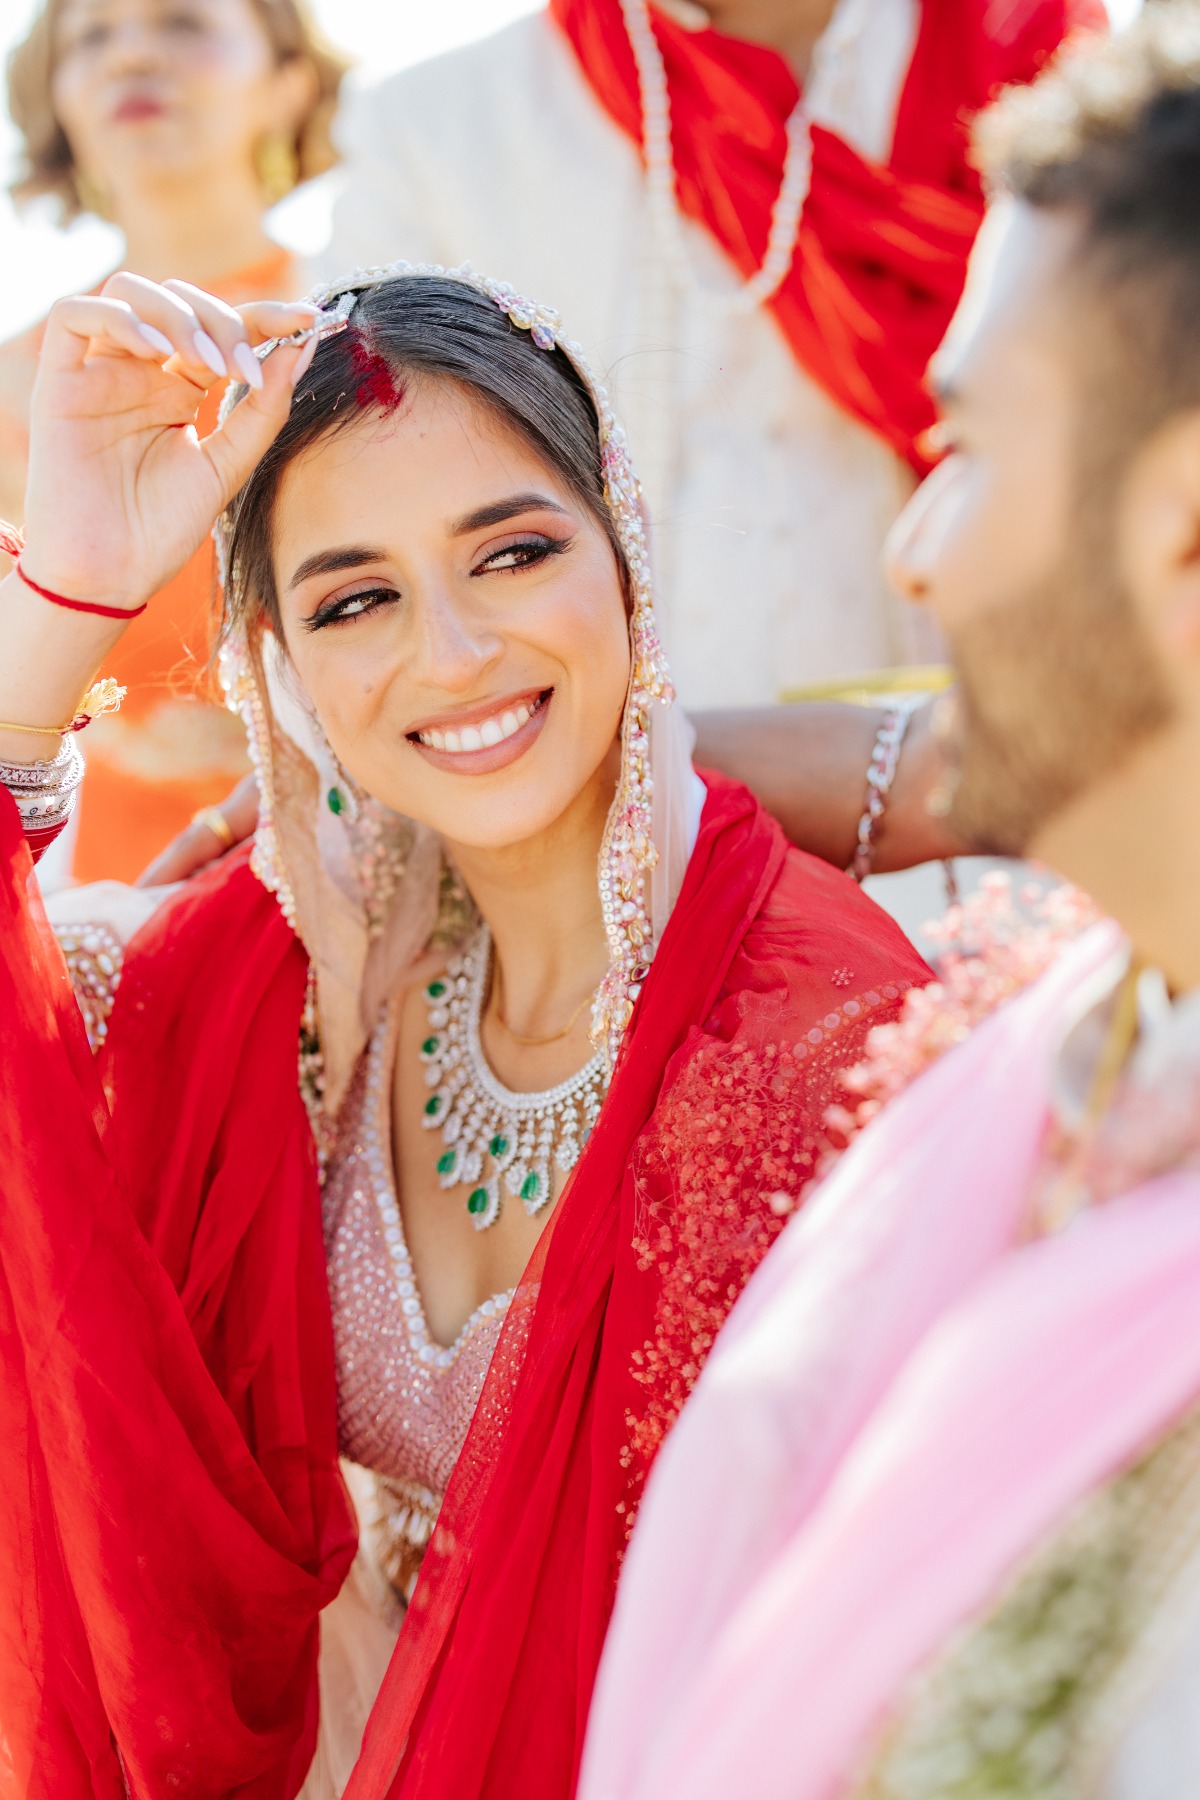 Hindu wedding traditions